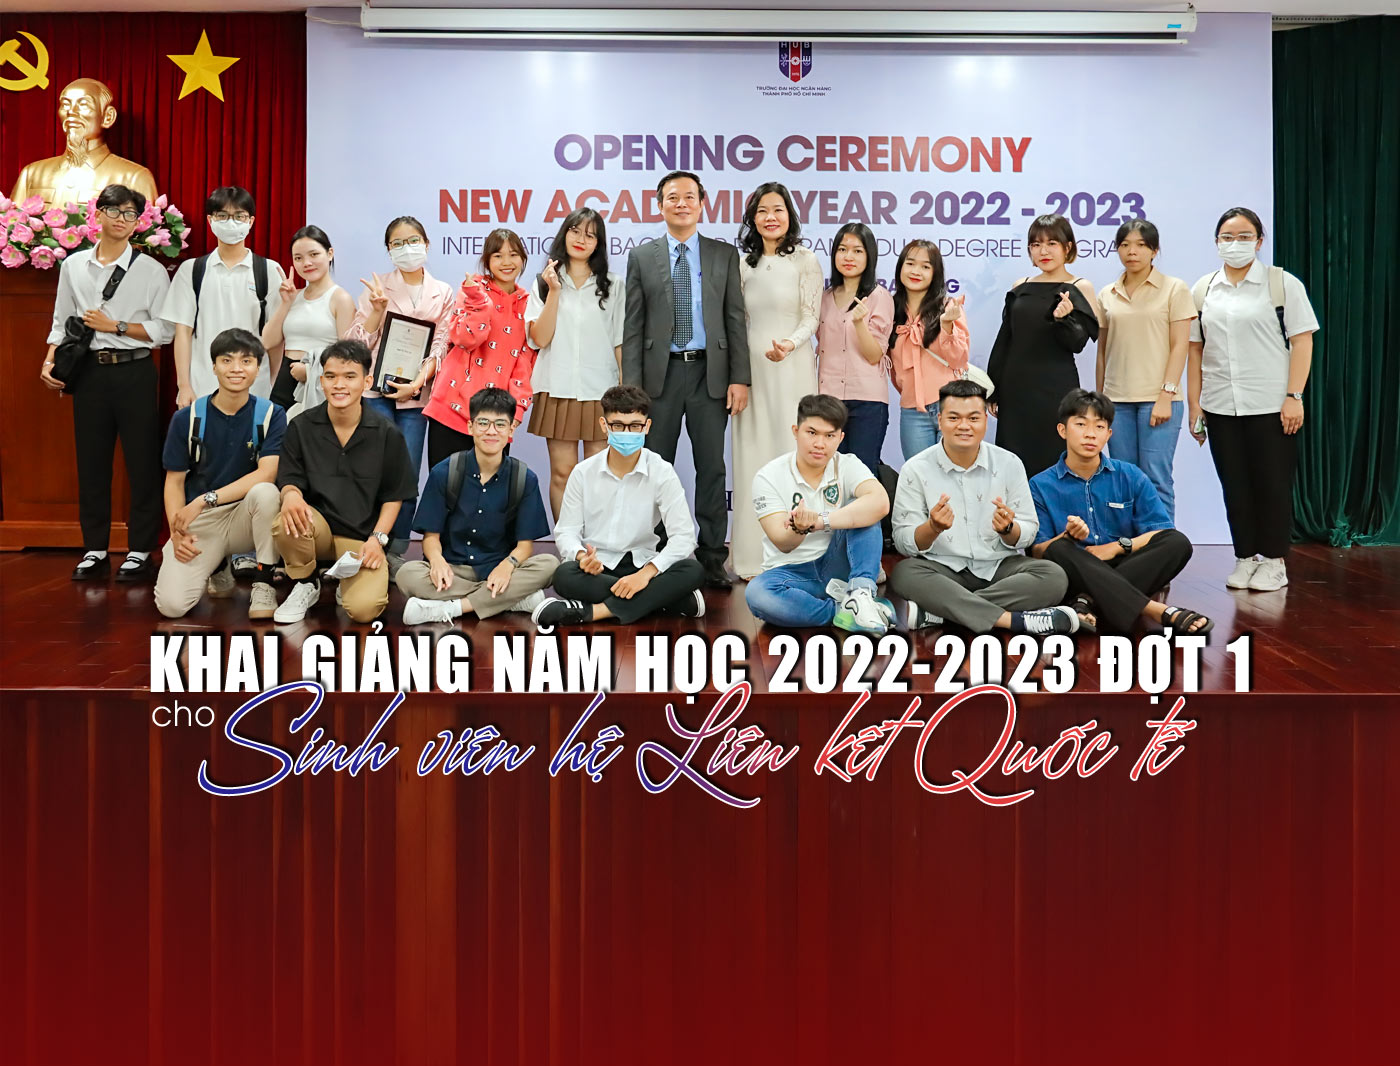 Khai giảng năm học 2022-2023 đợt 1 cho sinh viên hệ liên kết quốc tế - Ảnh 1